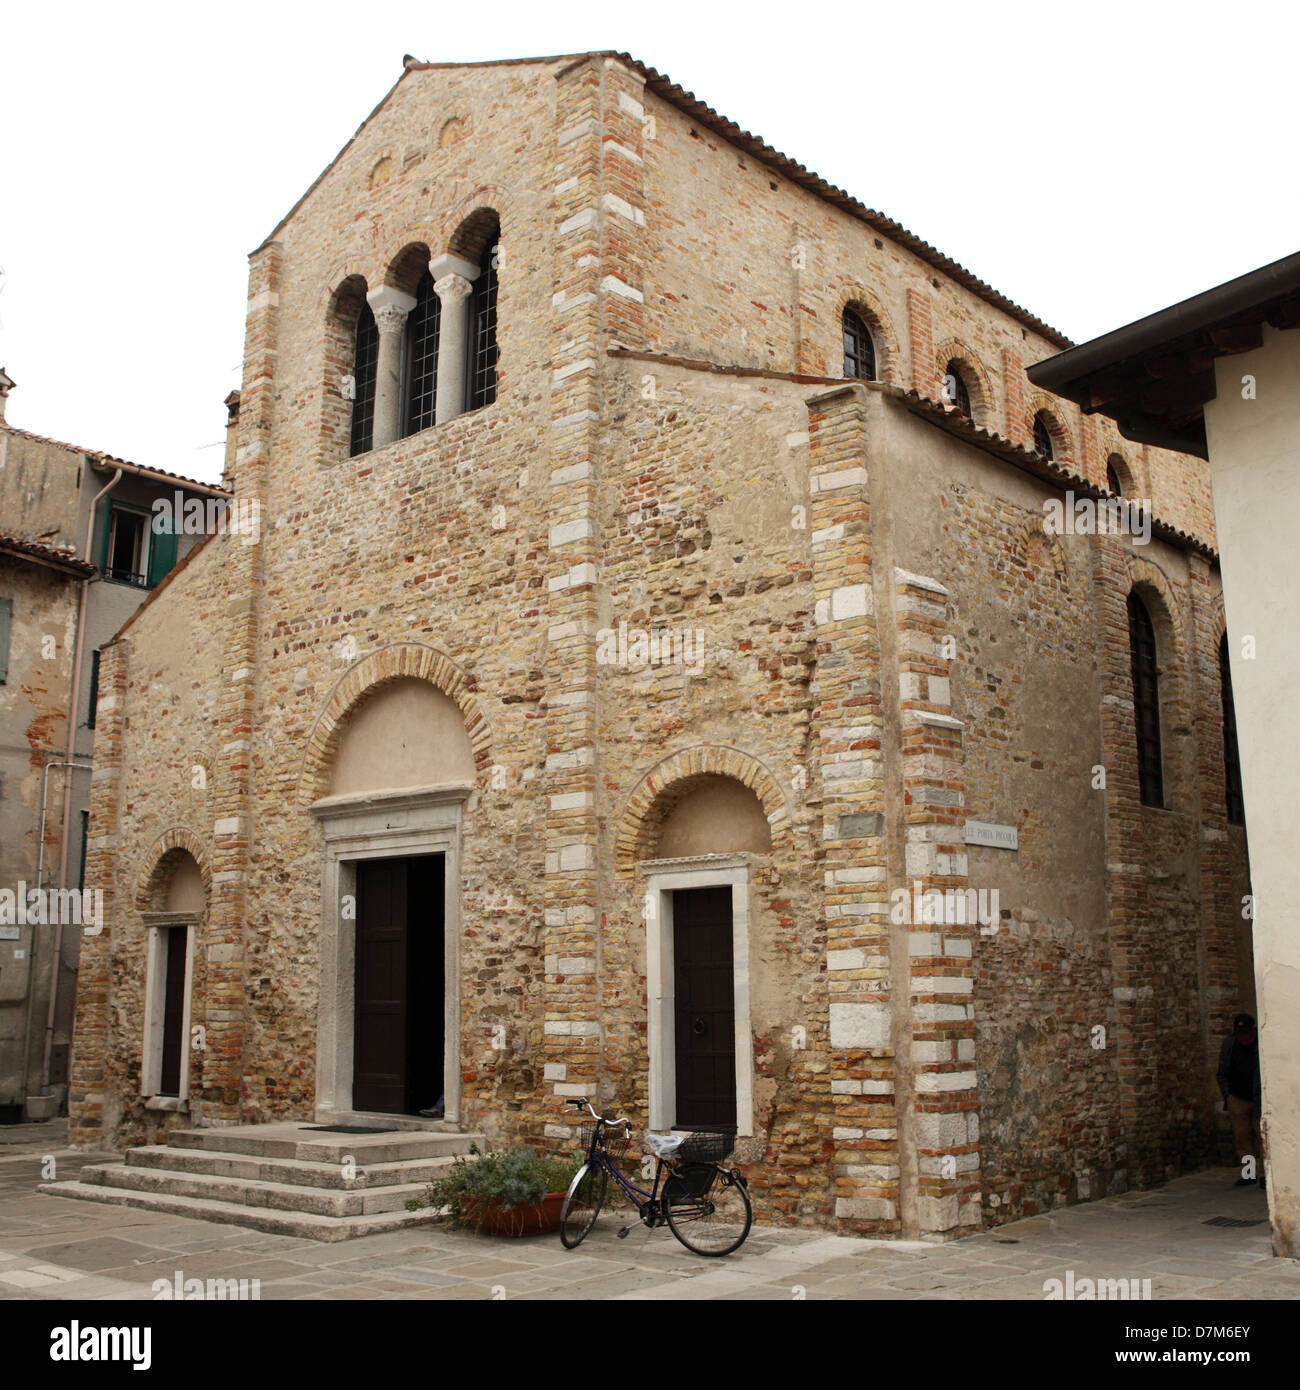 The Basilica di Santi Maria delle Grazie in Grado, Italy. Stock Photo